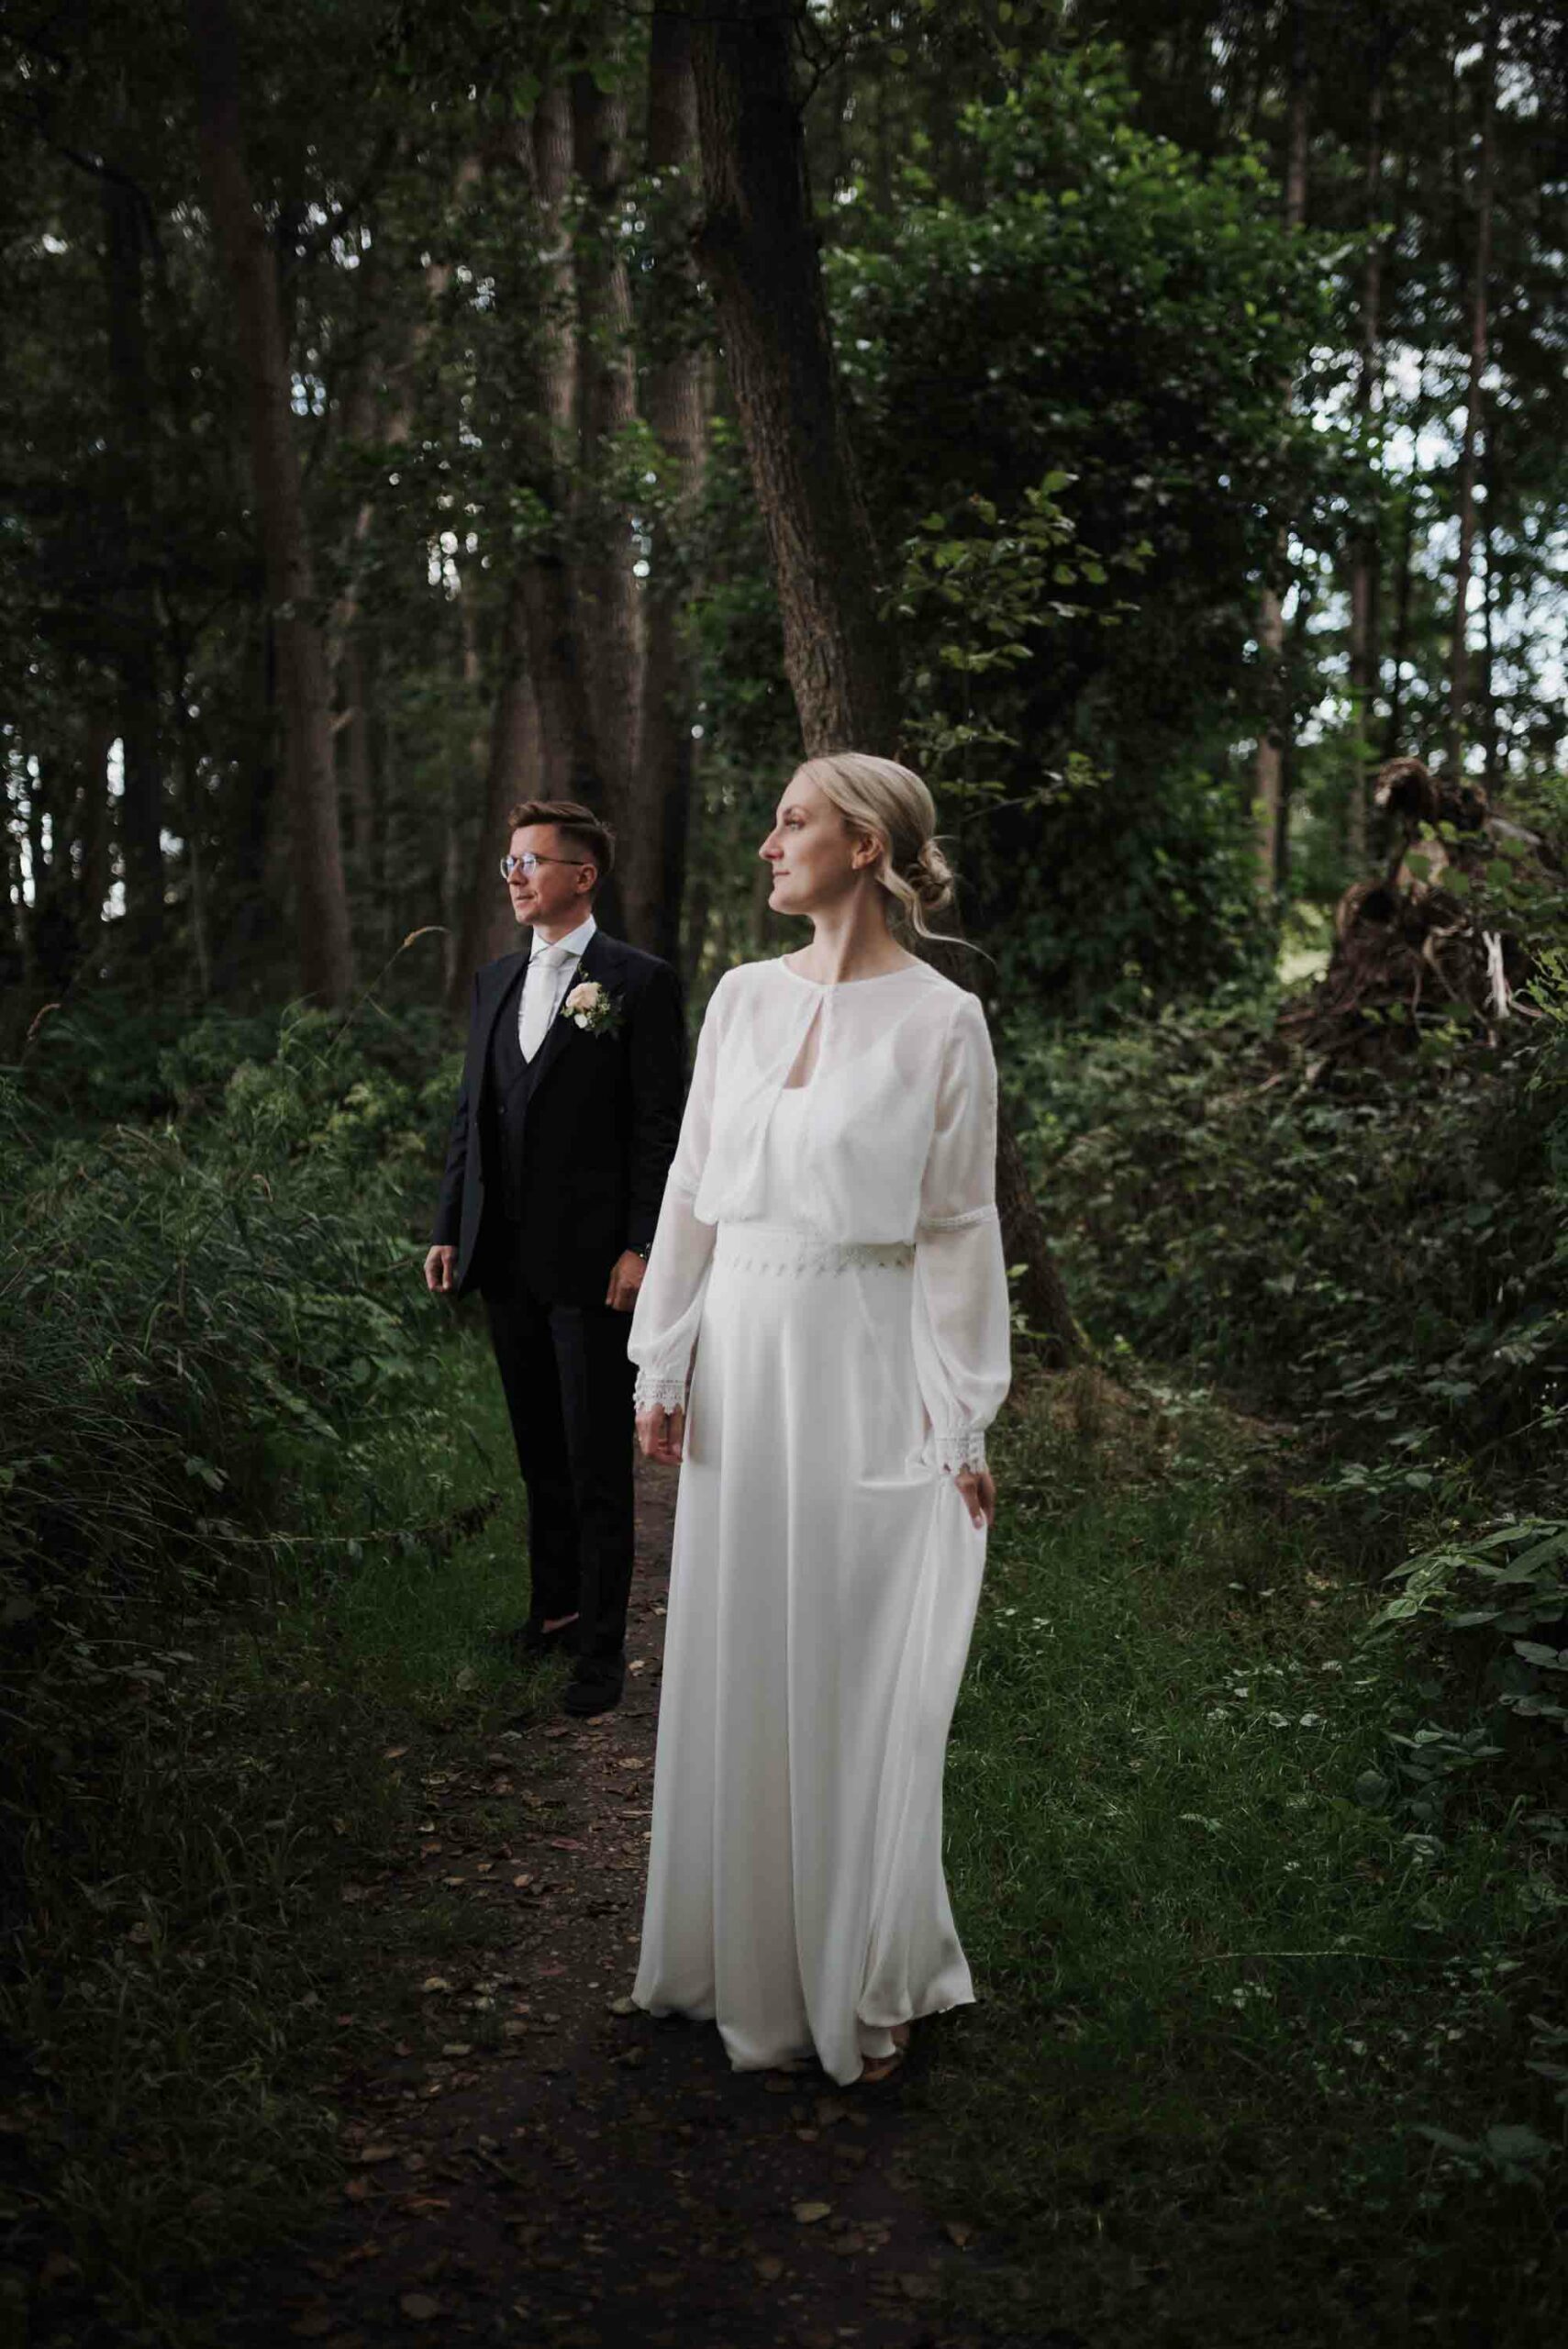 Ein elegantes Brautpaar im Wald nahe dem Seehotel Töpferhaus. Die Braut trägt ein fließendes, weißes Hochzeitskleid mit langen Ärmeln, und der Bräutigam ist in einem klassischen schwarzen Anzug gekleidet. Hochzeitsfotografin Schleswig Holstein hat diesen besonderen Moment festgehalten.